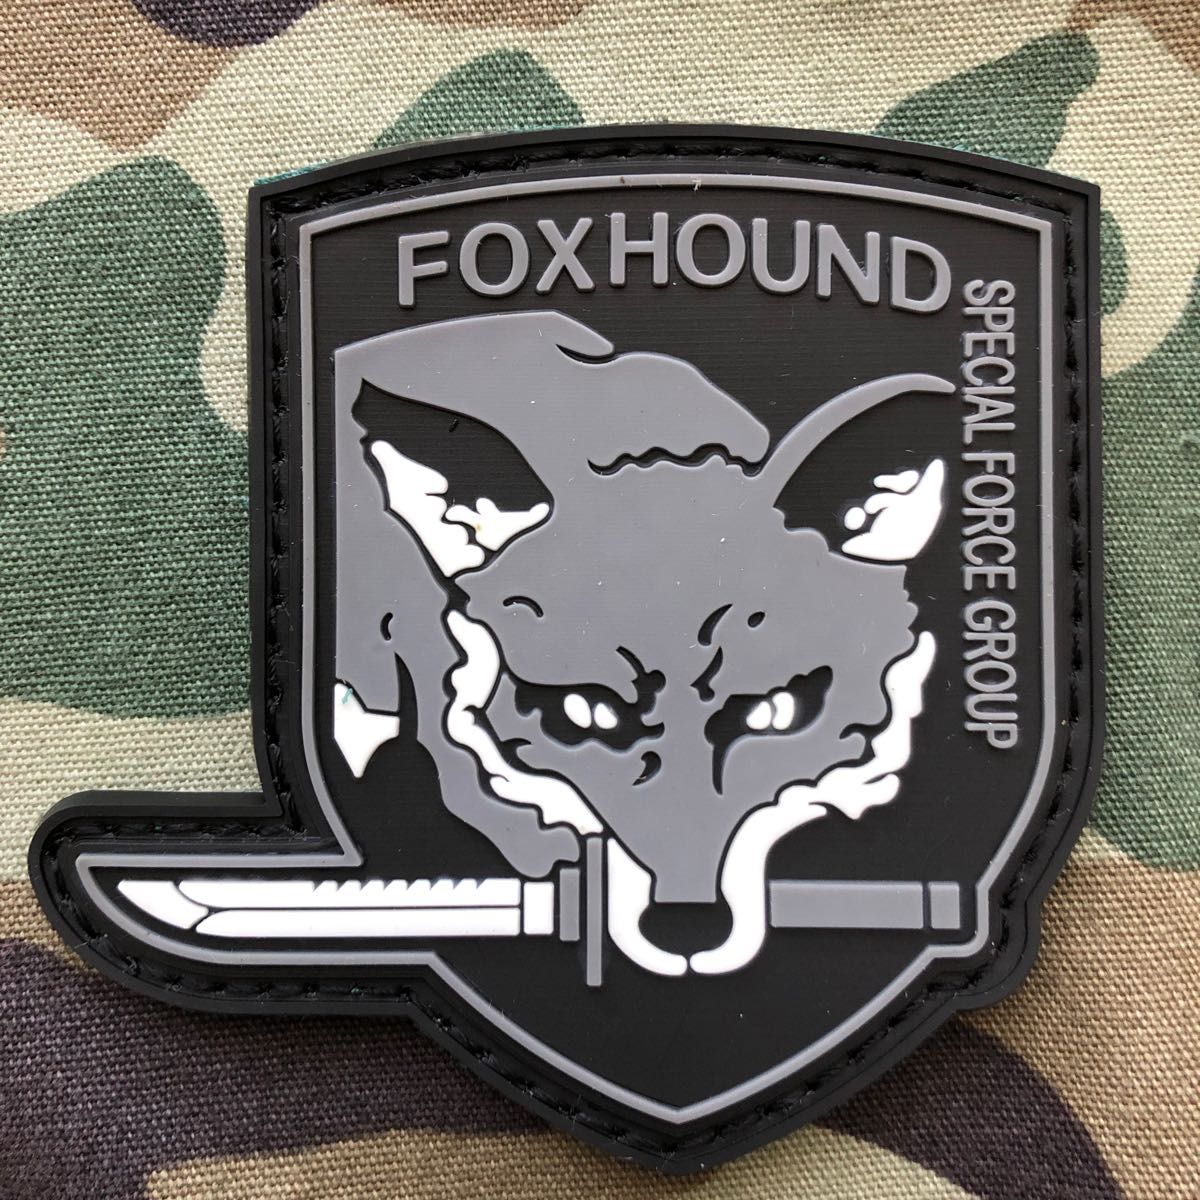 MGS FOX HOUND  PVCラバー ミリタリー パッチ ワッペン Bセット 2枚 サバゲー リメイク